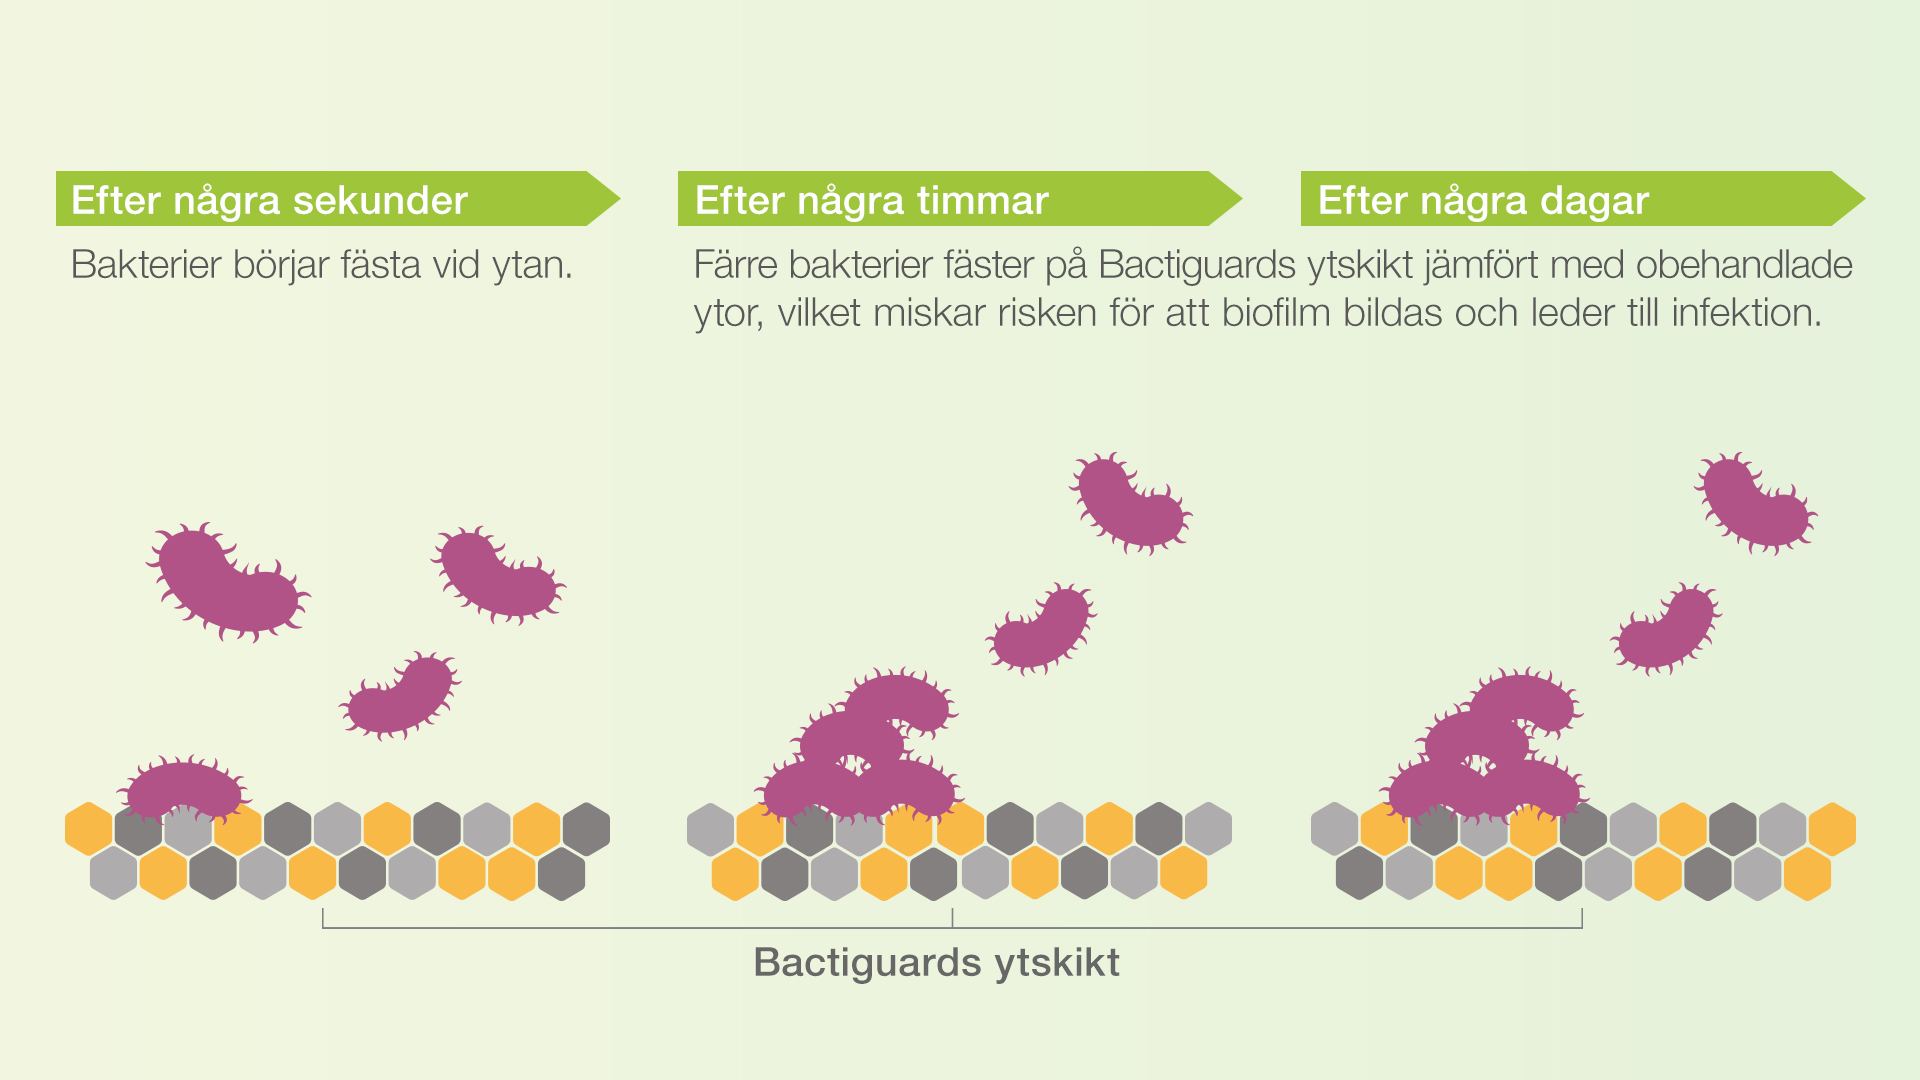 Bactiguards teknologi gör att färre mikrober fäster på ytan